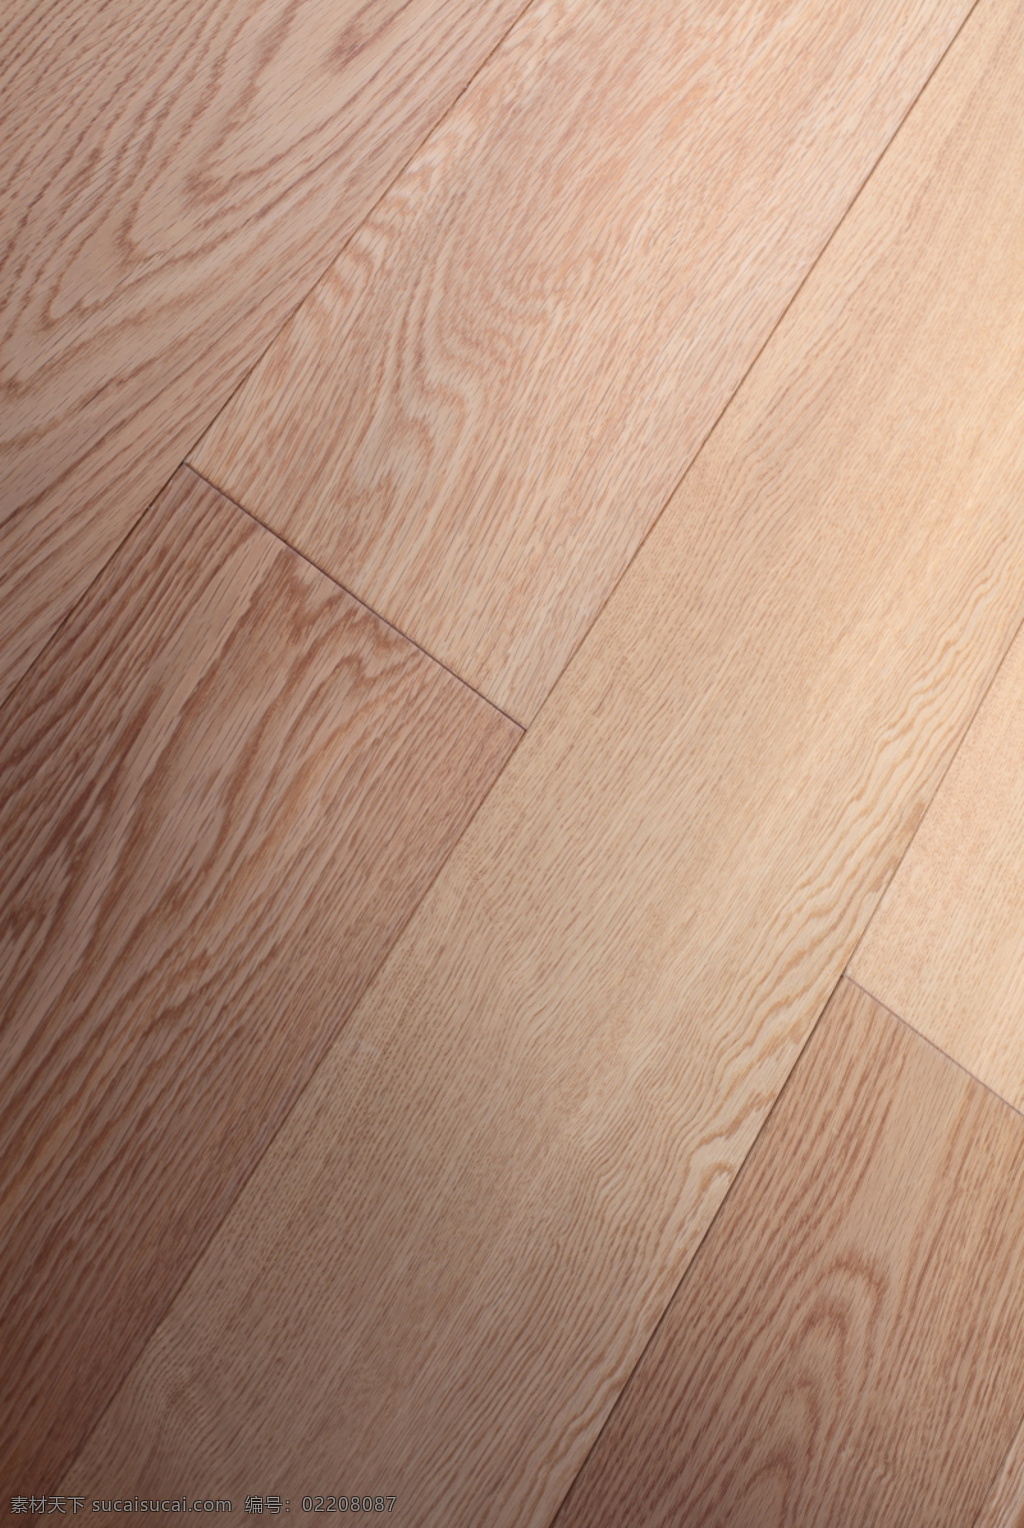 地板 材质 库 3d材质库 3d贴图 地板素材 地板材质库 地板精选 专业地板 真实 木纹 地板块 大 分辨率 高清木地板 3d 贴图